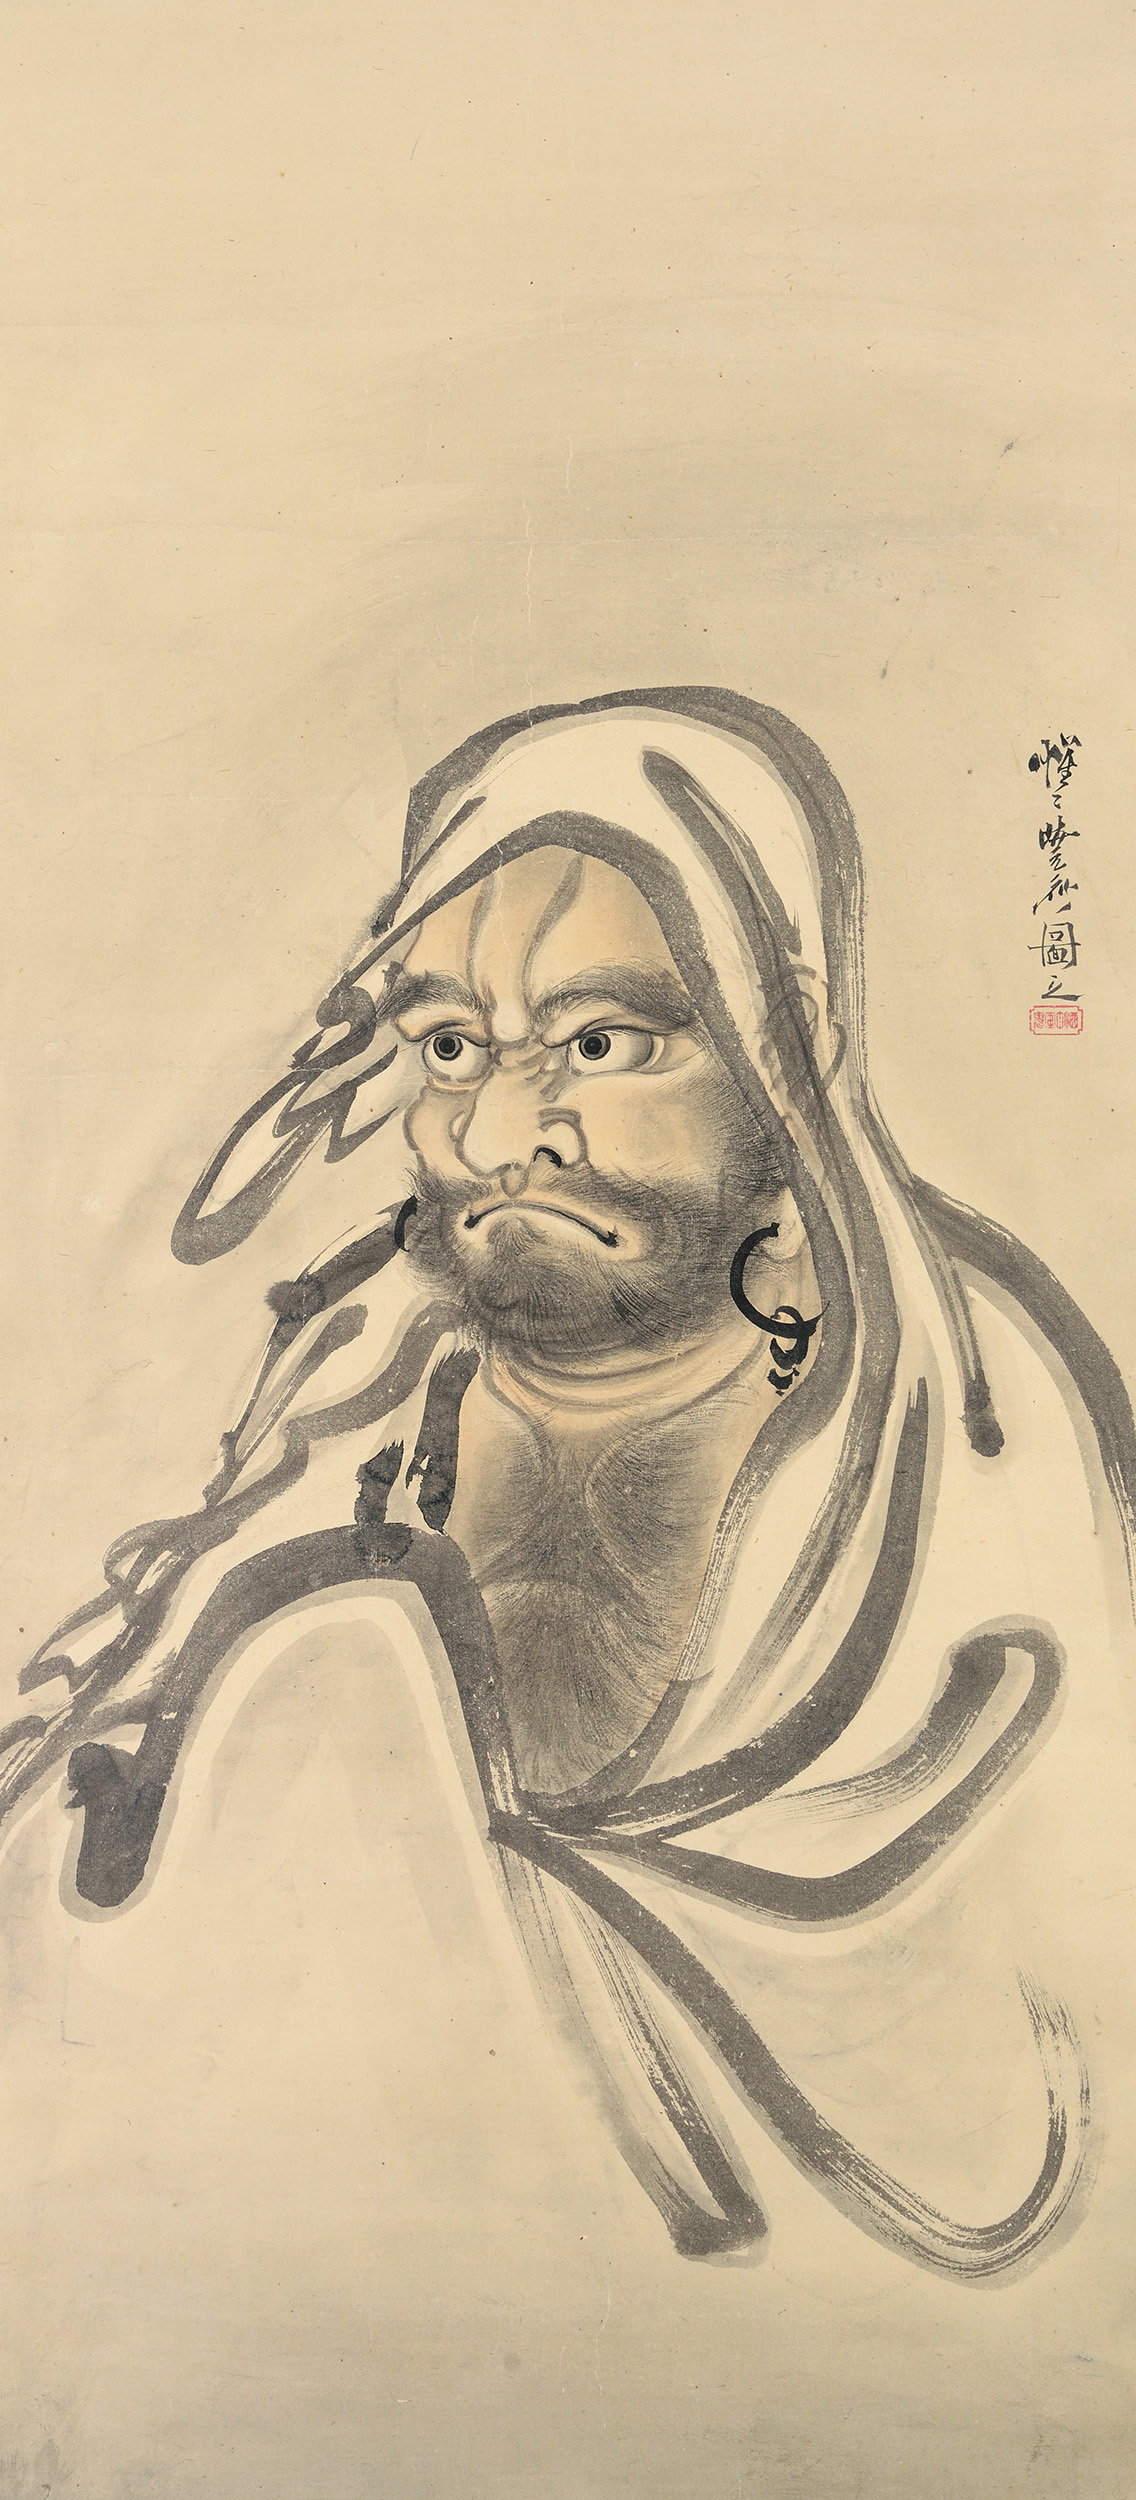 河鍋暁斎 《達磨図》 明治4-22(1871-89)年 紙本淡彩